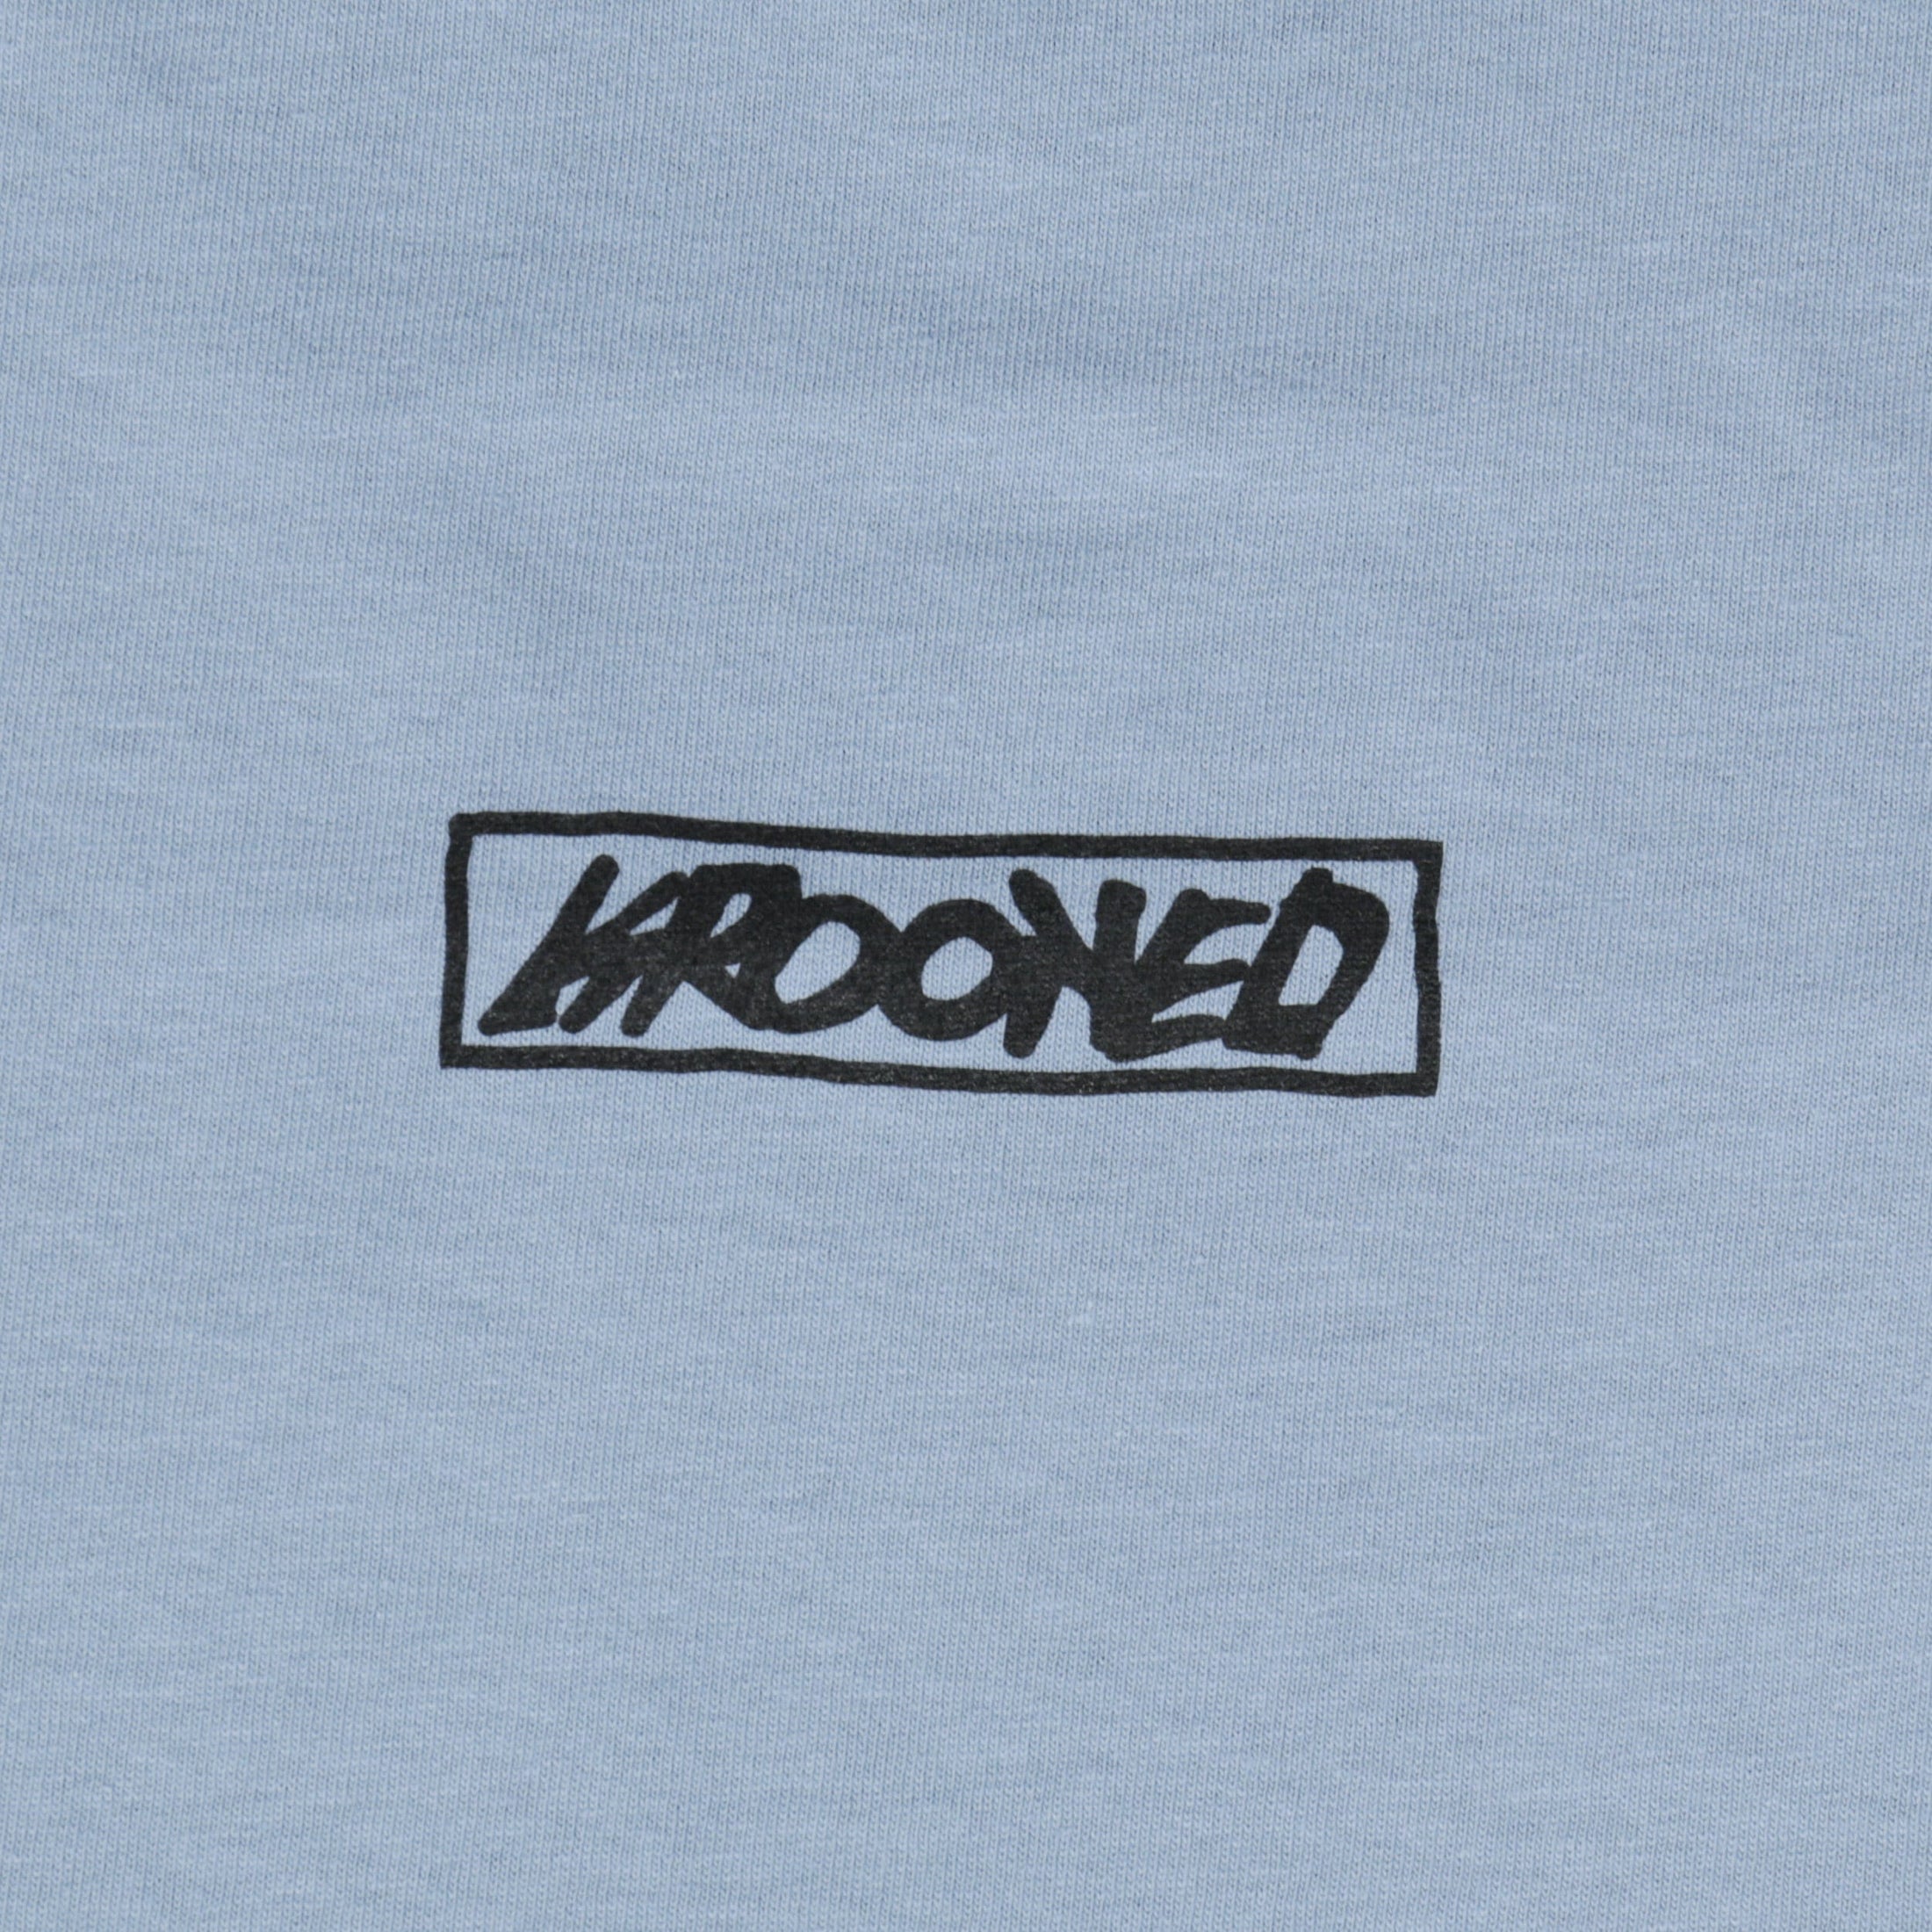 Krooked Moonsmile Raw T-Shirt Slate / Navy